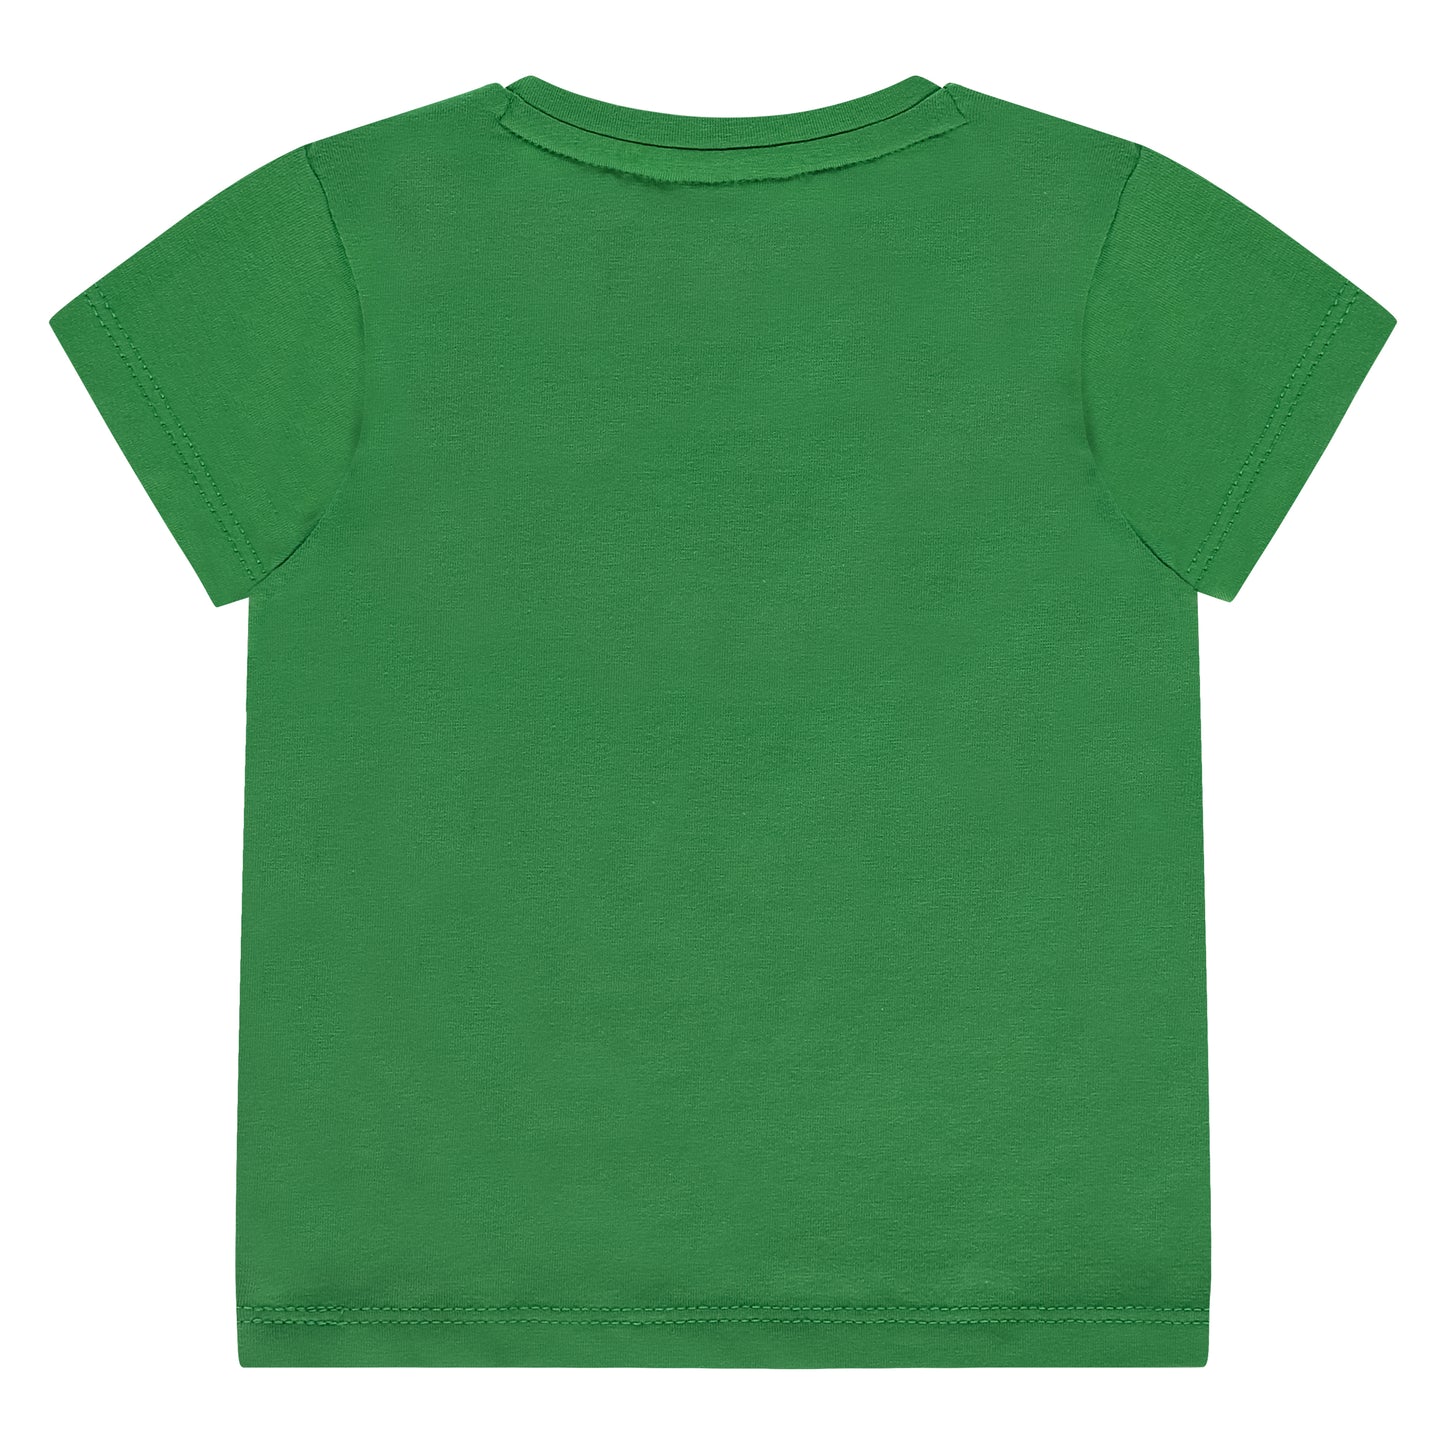 Babyface Shirt - Grass